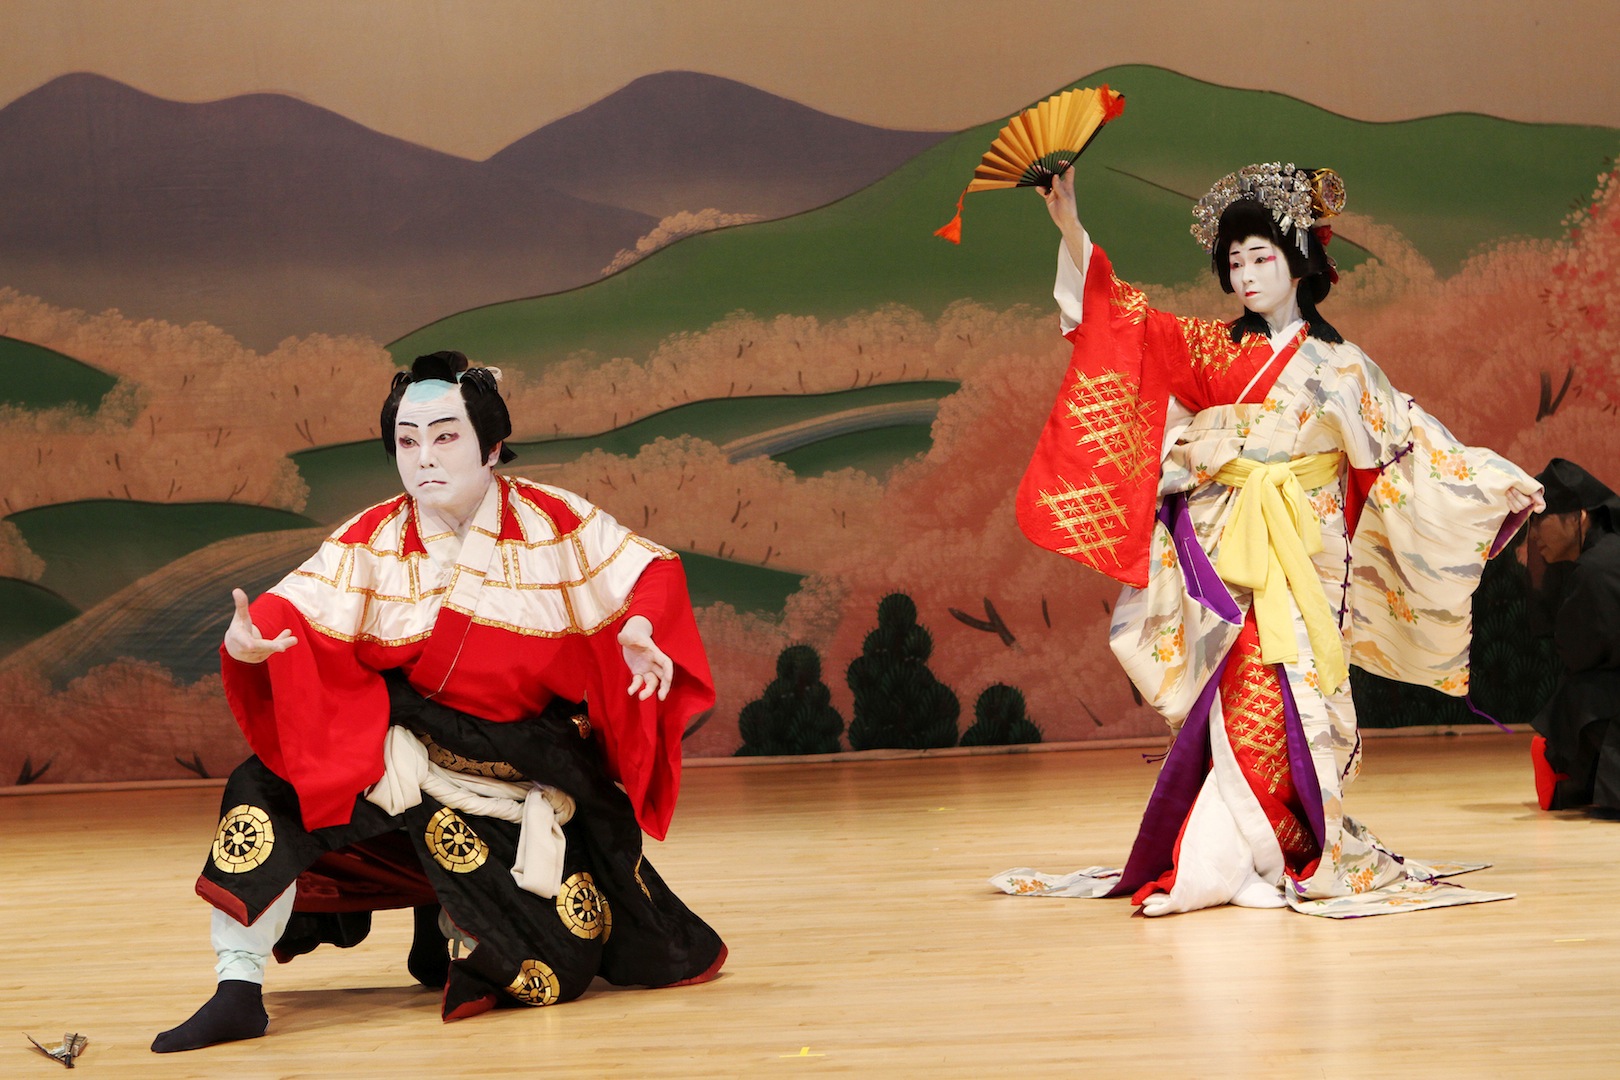 Nishizaki Sakurako and Bando Kotji in "Yoshino Mountain"